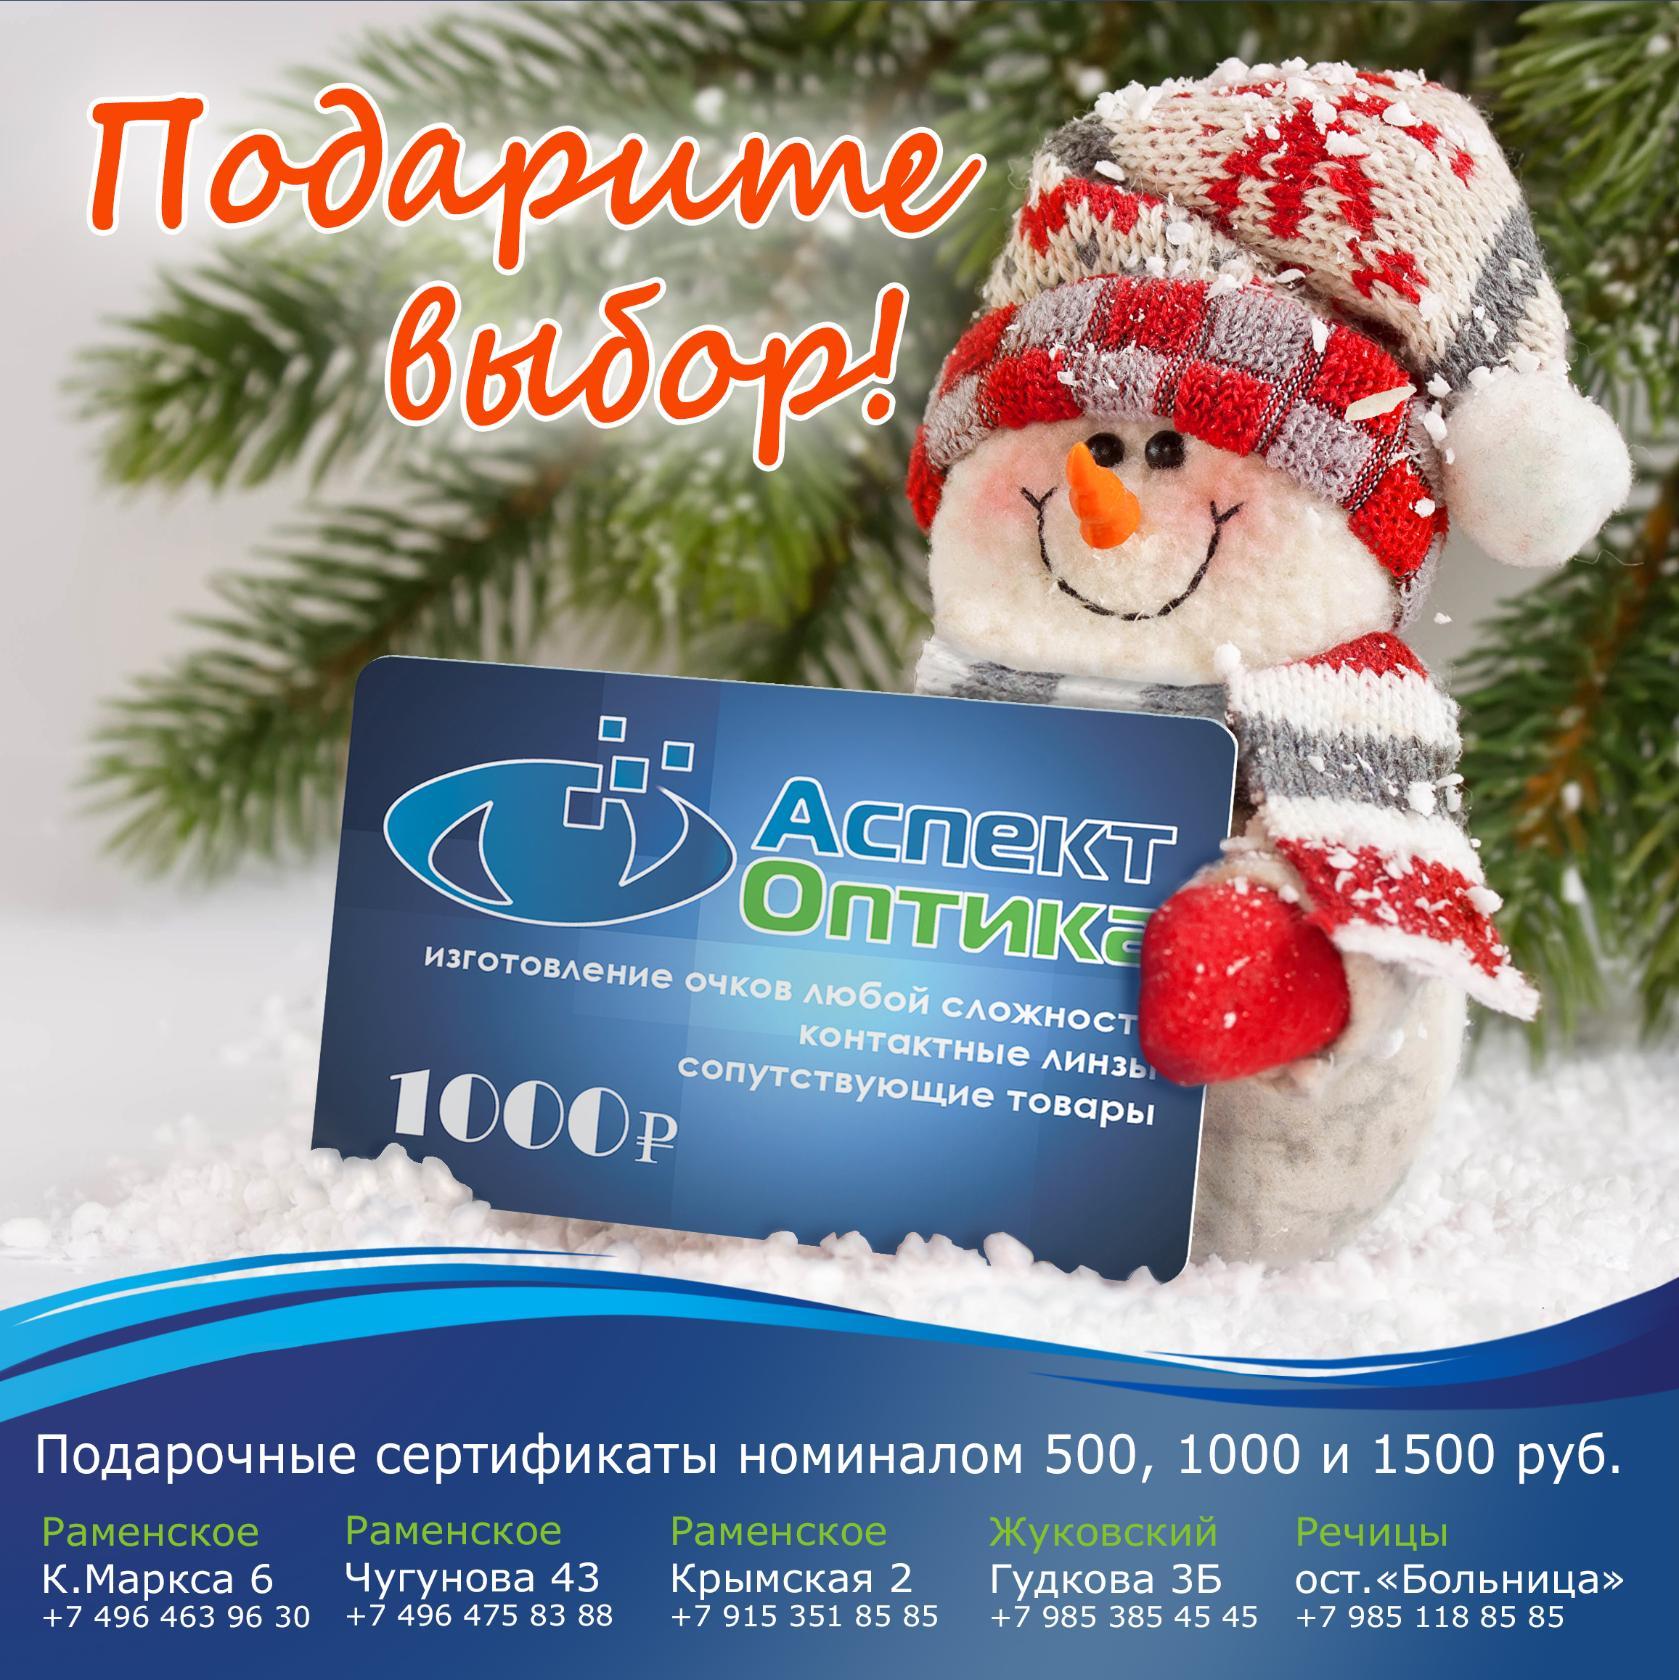 Сделайте полезный подарок своим близким!
В наших салонах оптики "Аспект" есть подарочные сертификаты номиналом 500, 1000 и 1500 рублей.